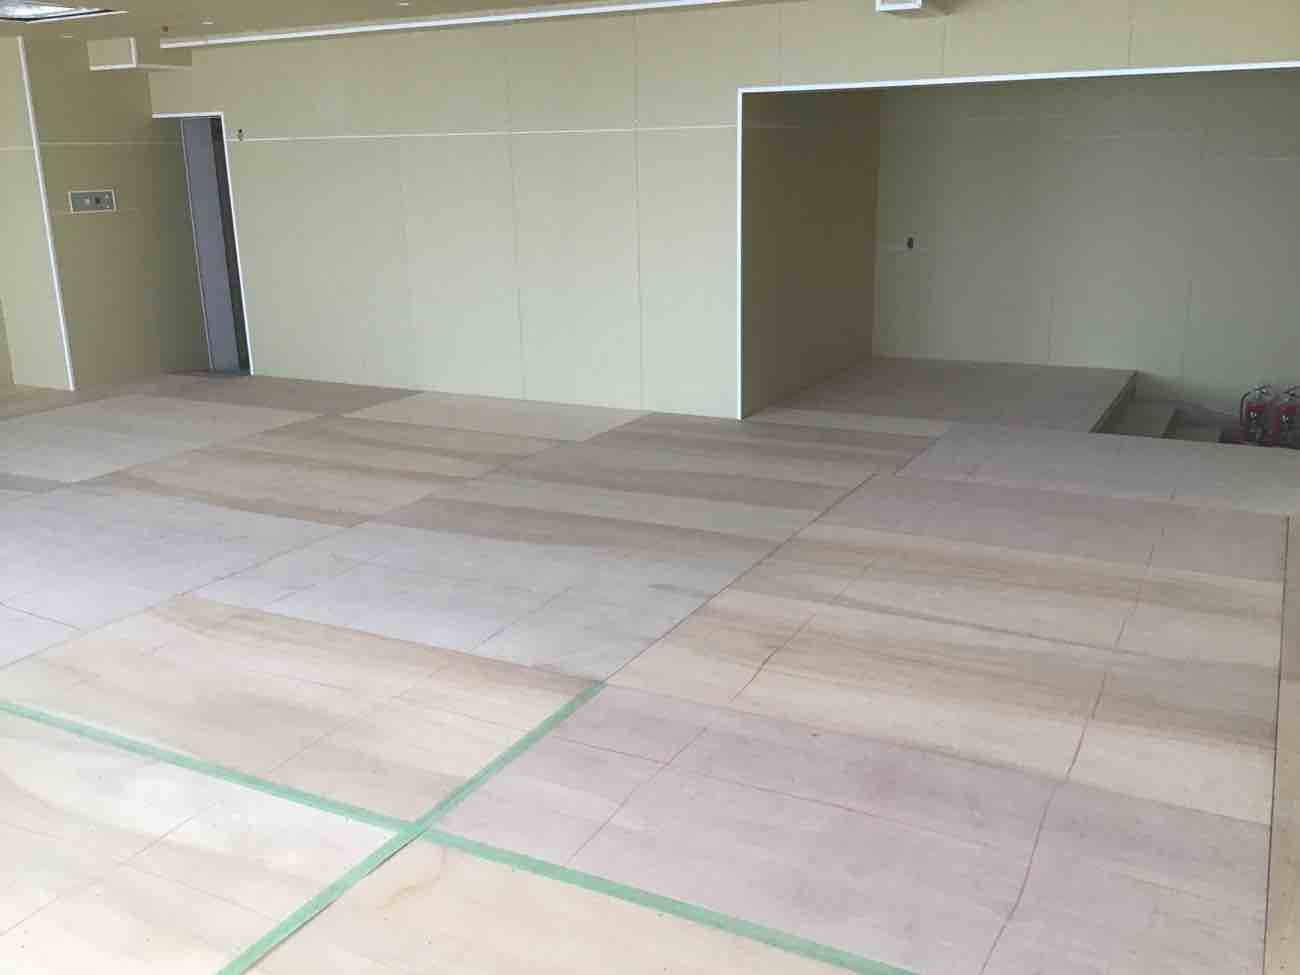 千葉県鴨川市にて病院改修に伴う置床工事を行いました。フリーフロアーエアロビクスシステム